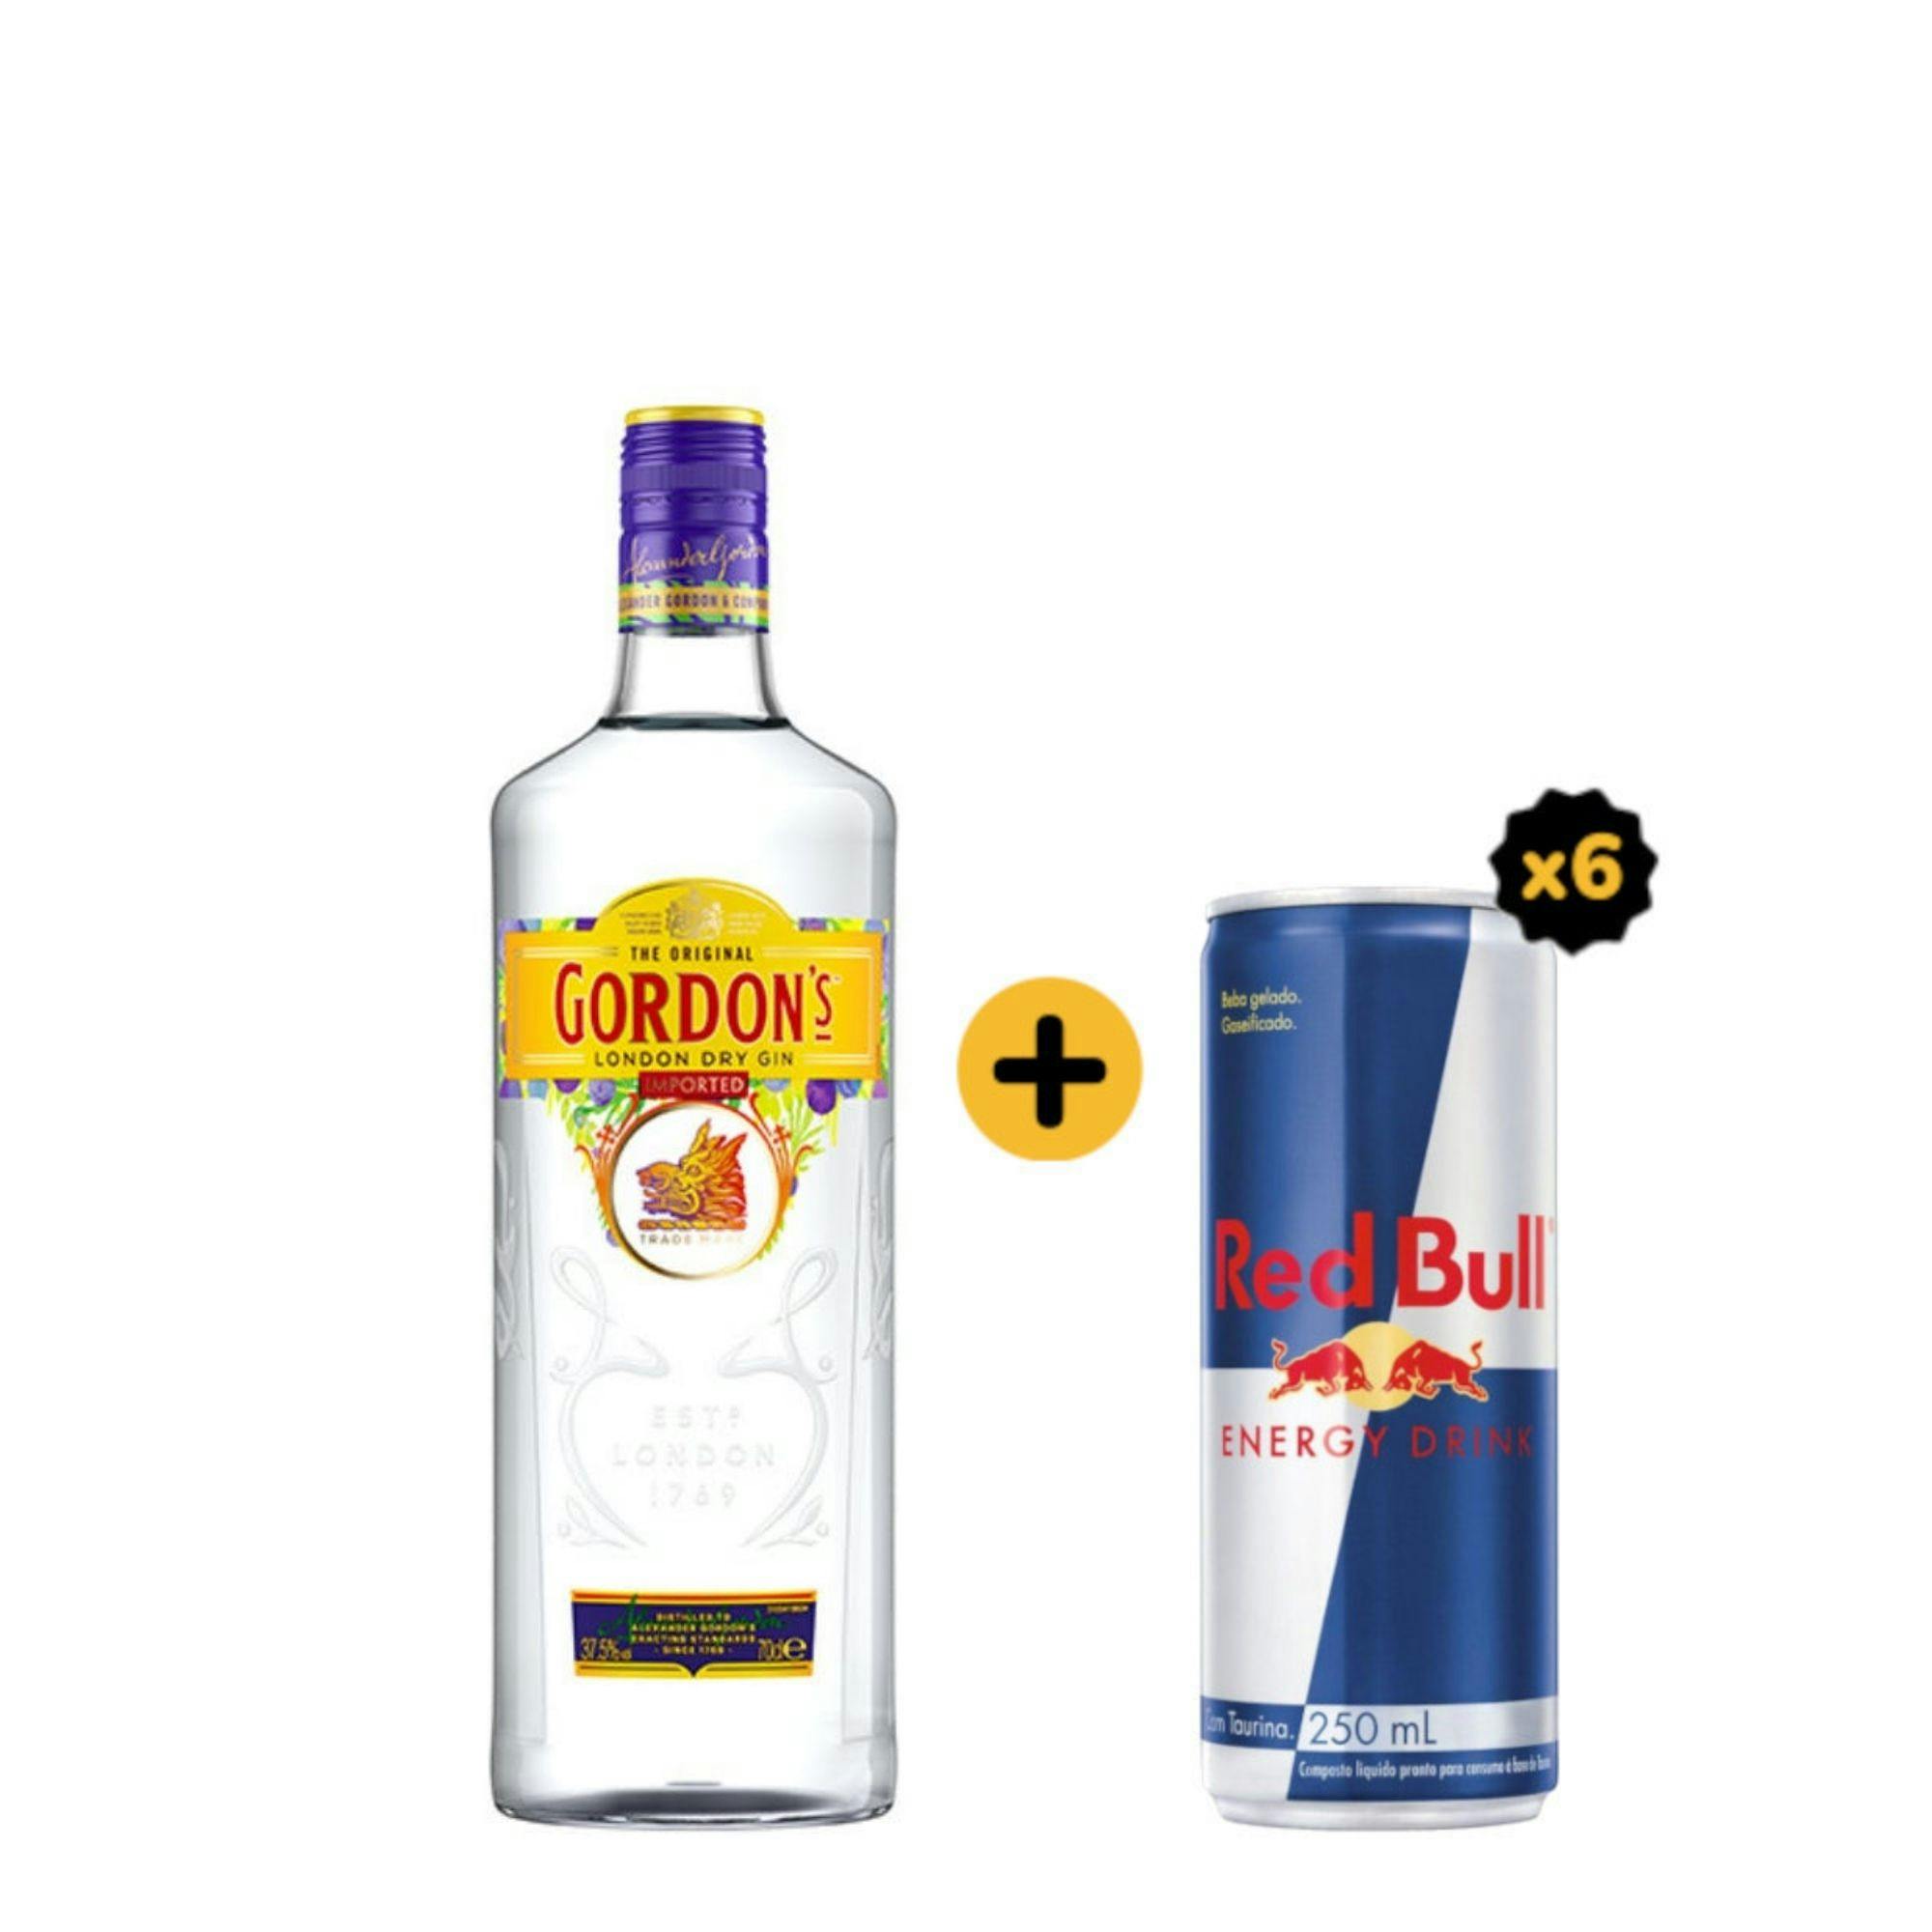 Combo Gordons + Red Bull (1 Gin Gordons London Dry 750ml + 6 Red Bull Energy Drink 250ml)